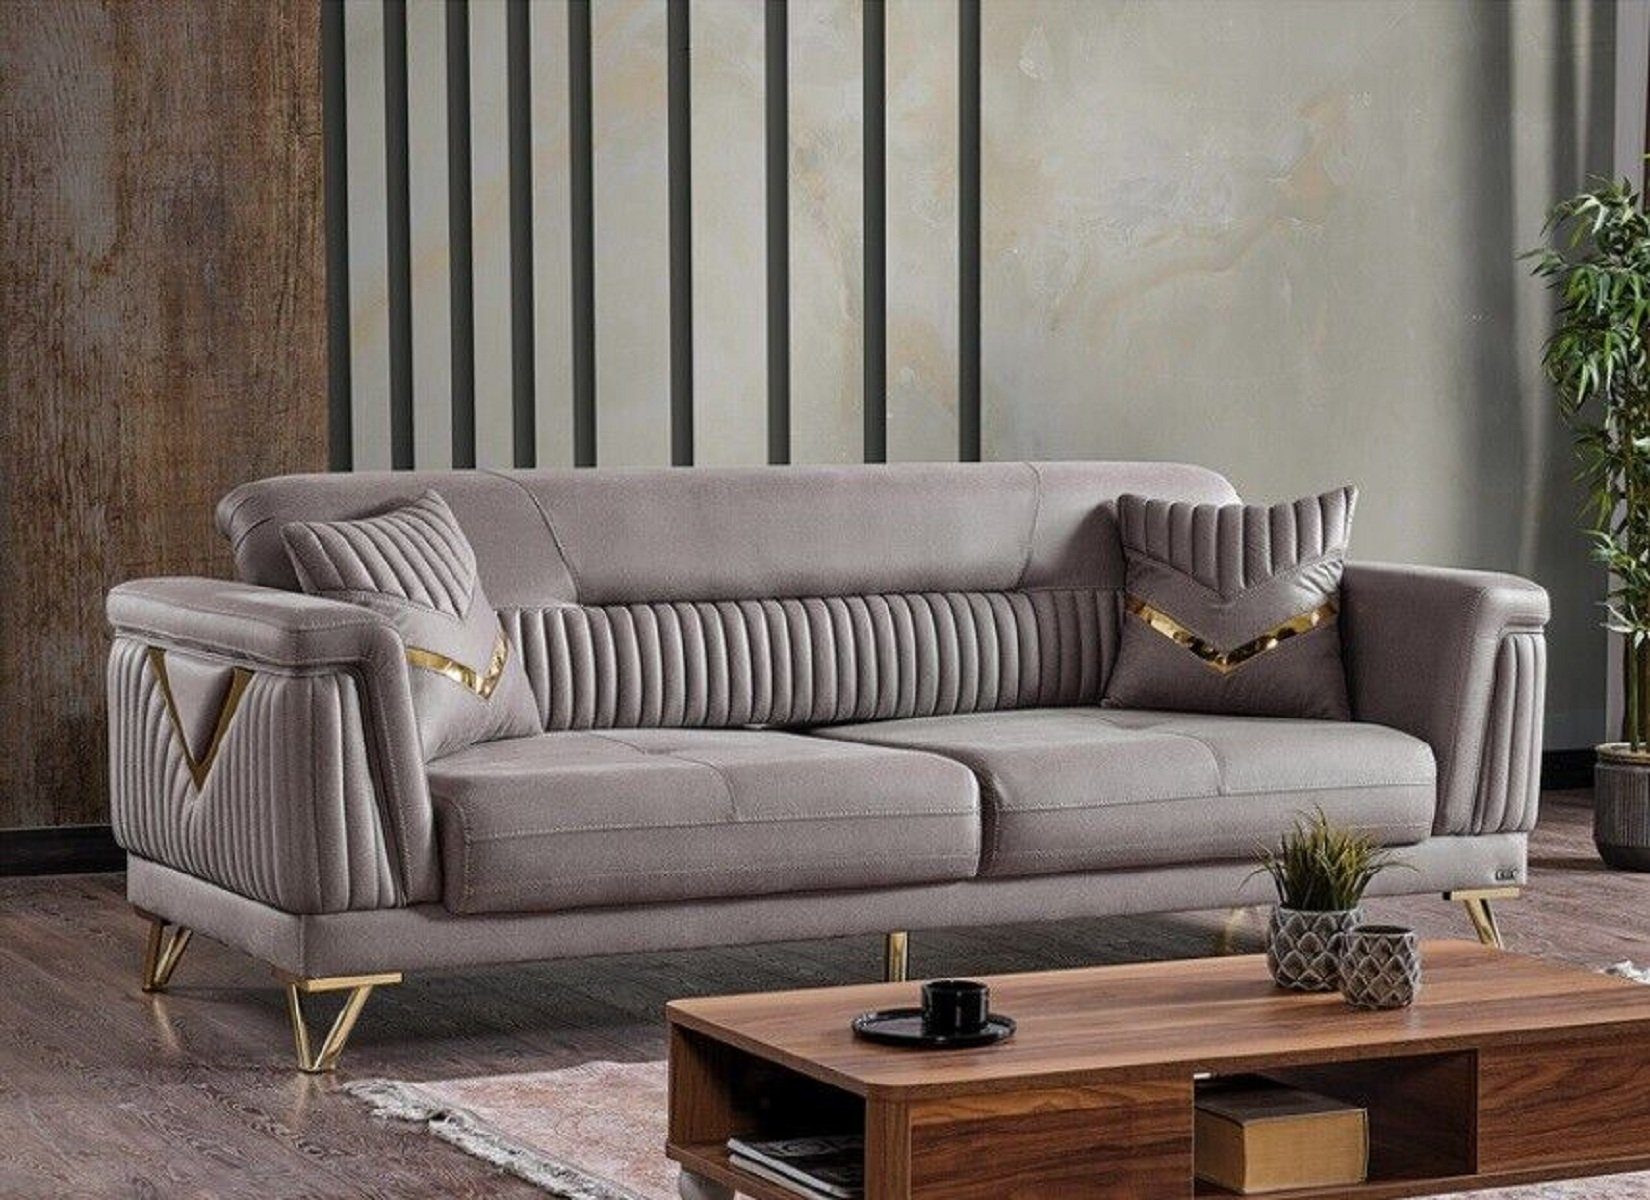 JVmoebel 3-Sitzer Sofa Couch Polster 3 Sitzer Textil Sofas Couchen Wohnzimmer Luxus Sofa, 1 Teile, Made in Europa